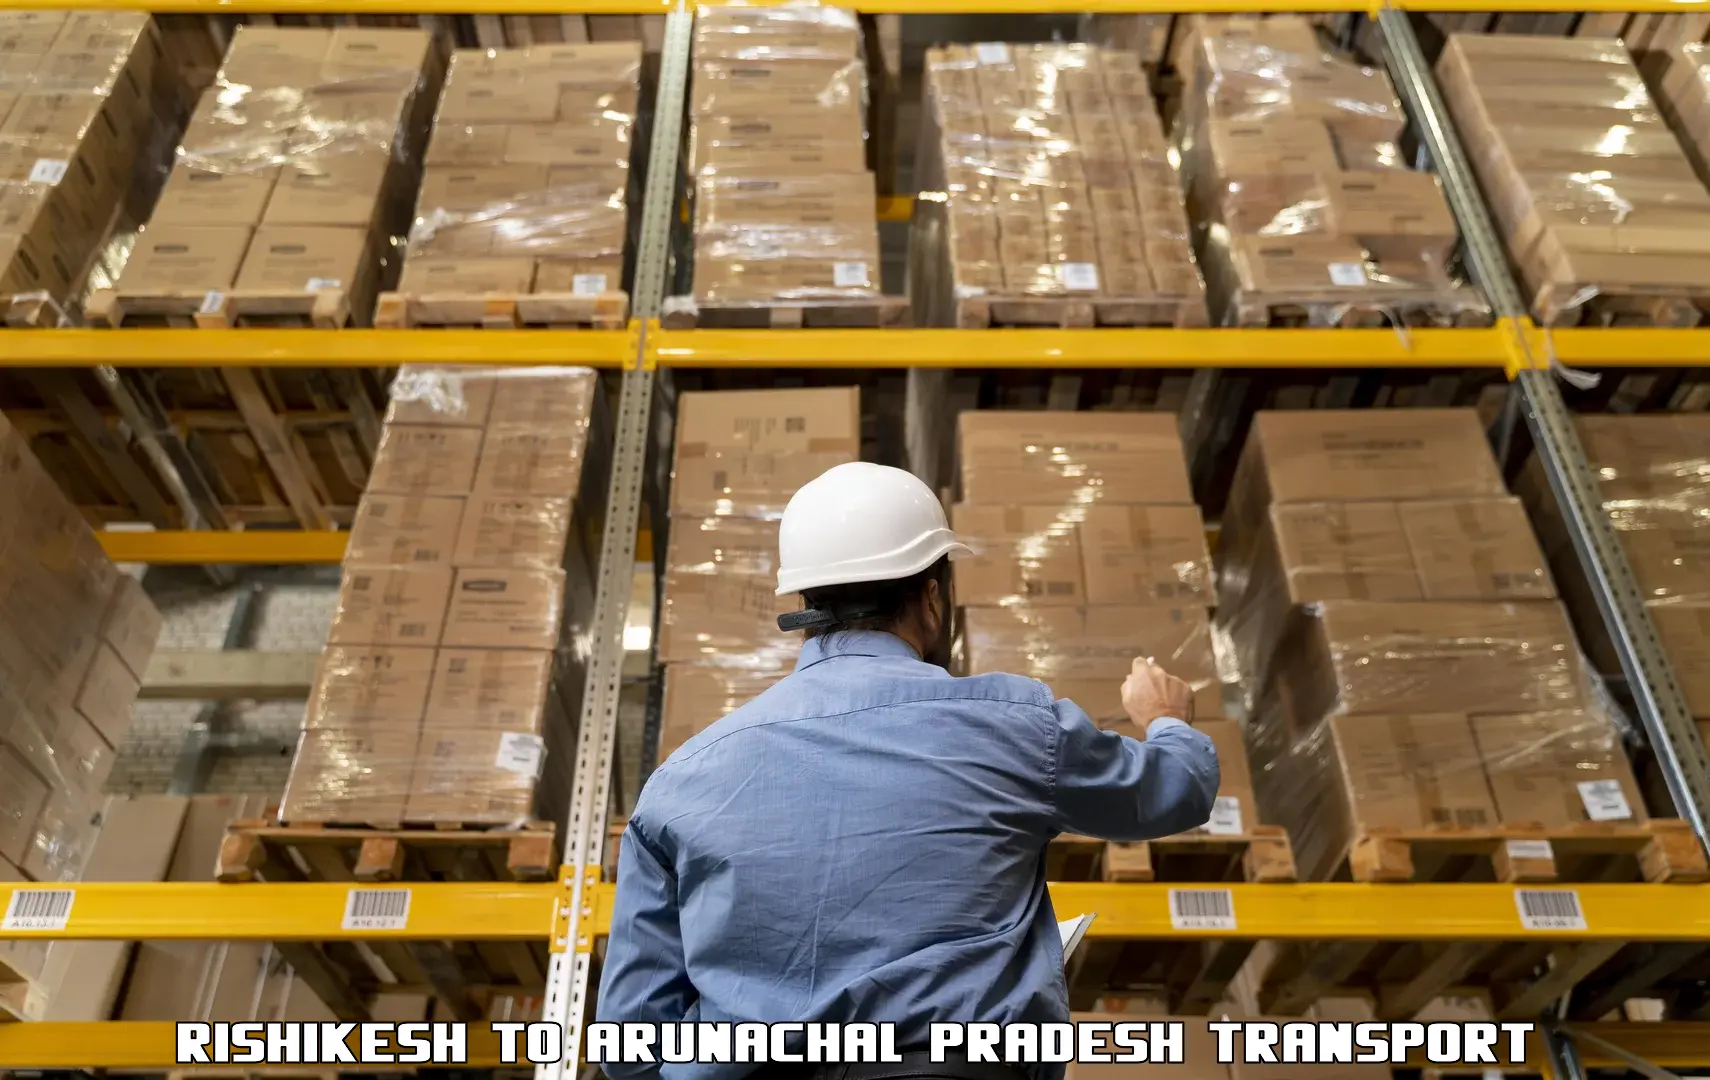 Container transport service Rishikesh to Arunachal Pradesh